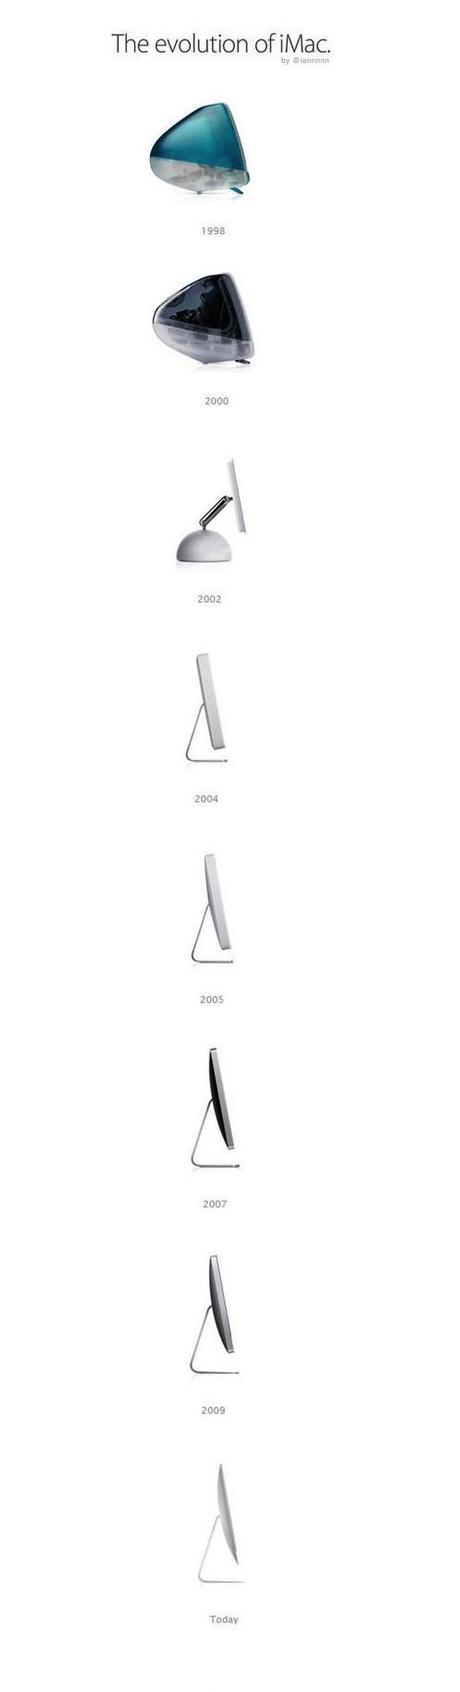 Évolution des iMac de 1998 à aujourd’hui